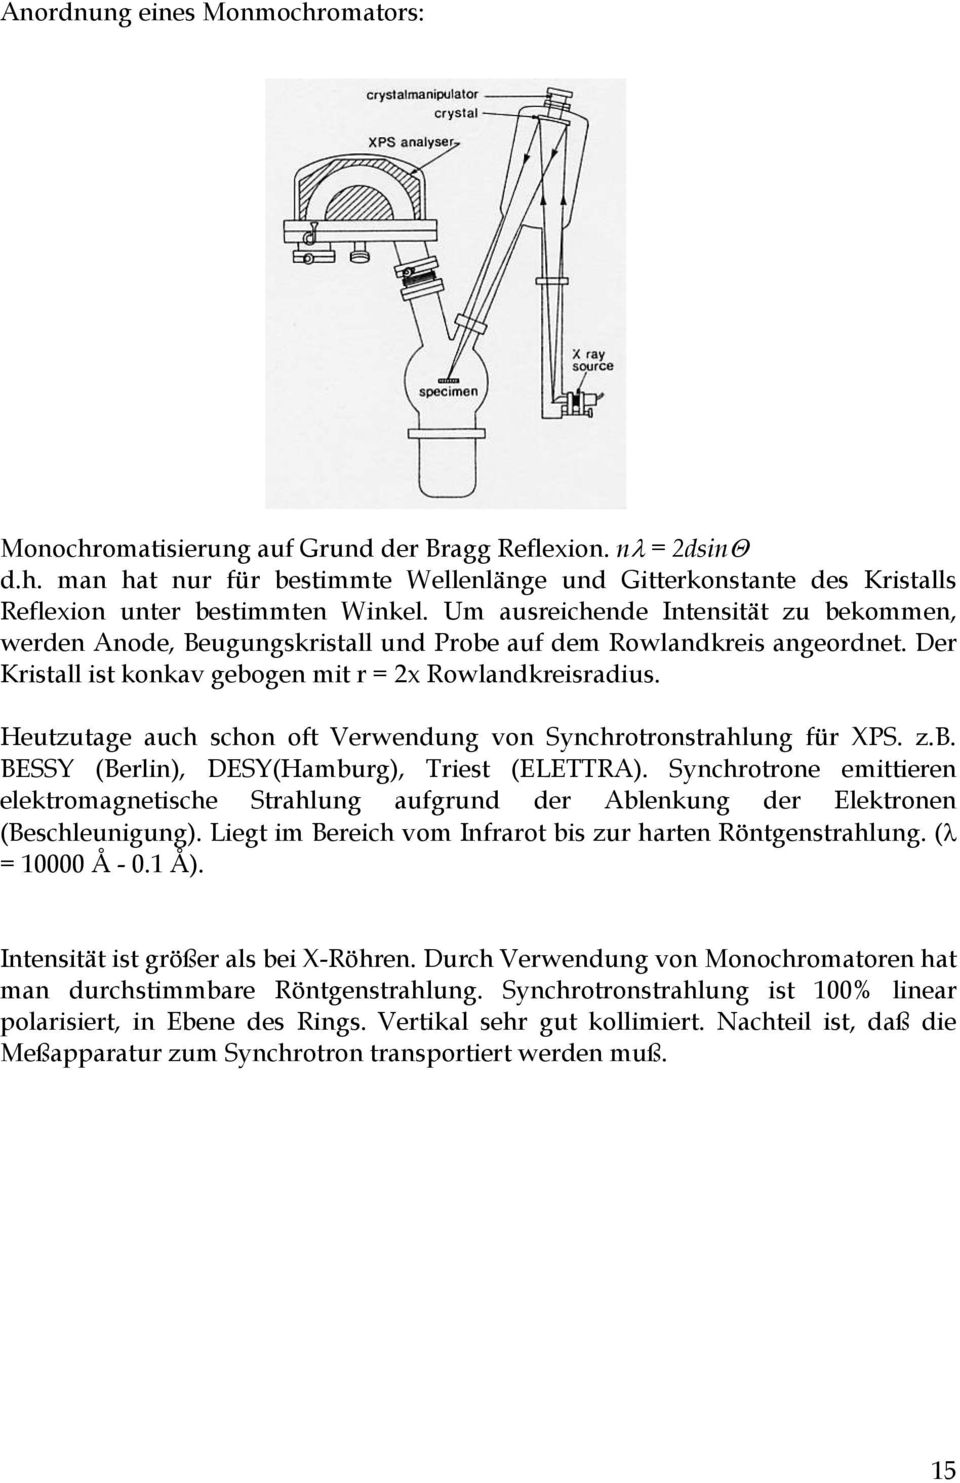 Heutzutage auch schon oft Verwendung von Synchrotronstrahlung für XPS. z.b. BESSY (Berlin), DESY(Hamburg), Triest (ELETTRA).